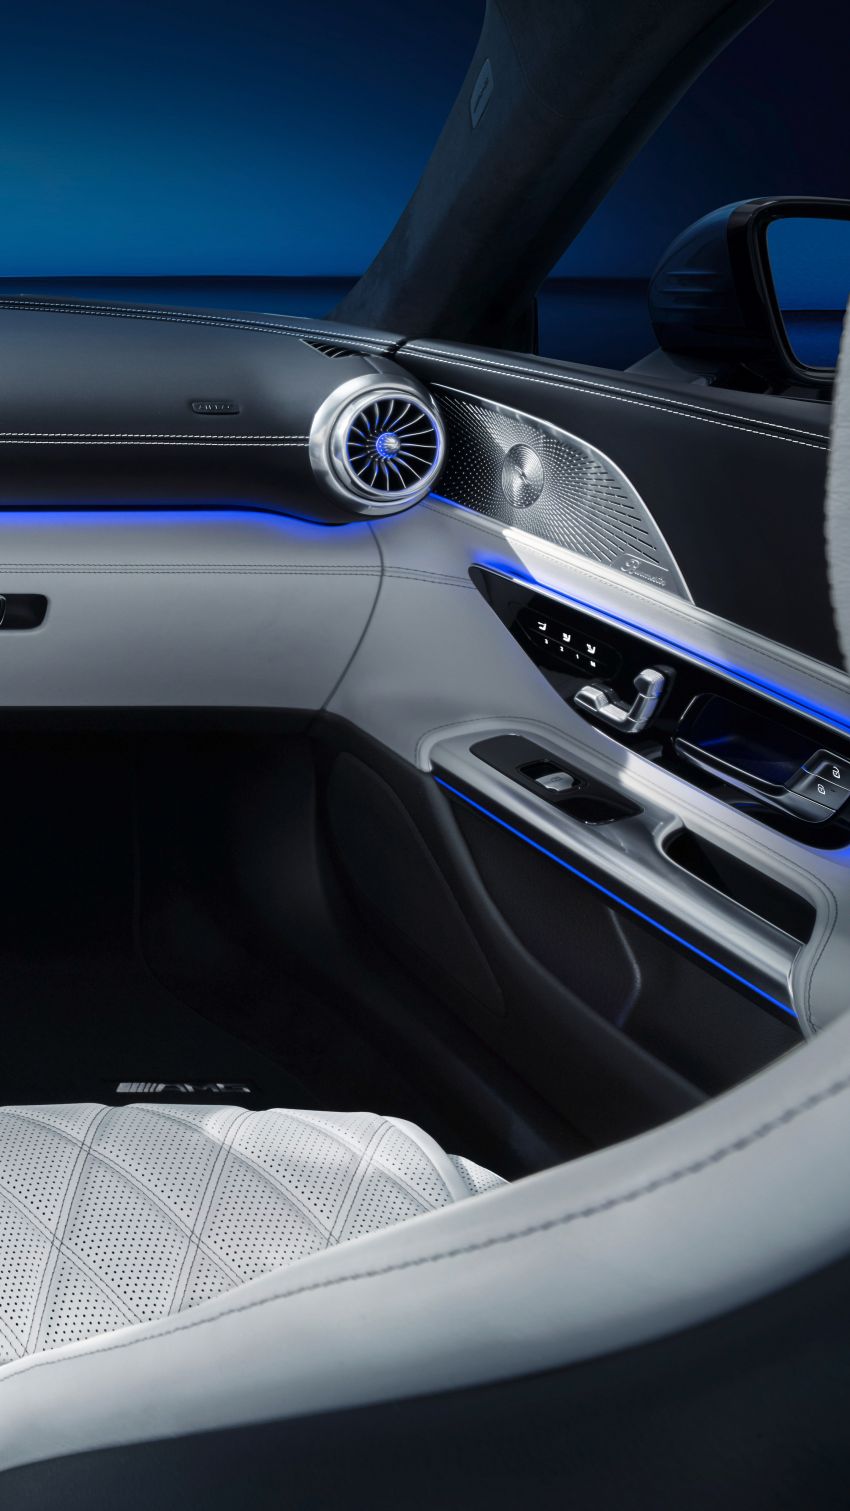 2022 R232 Mercedes-AMG SL interior gets revealed Image #1318881